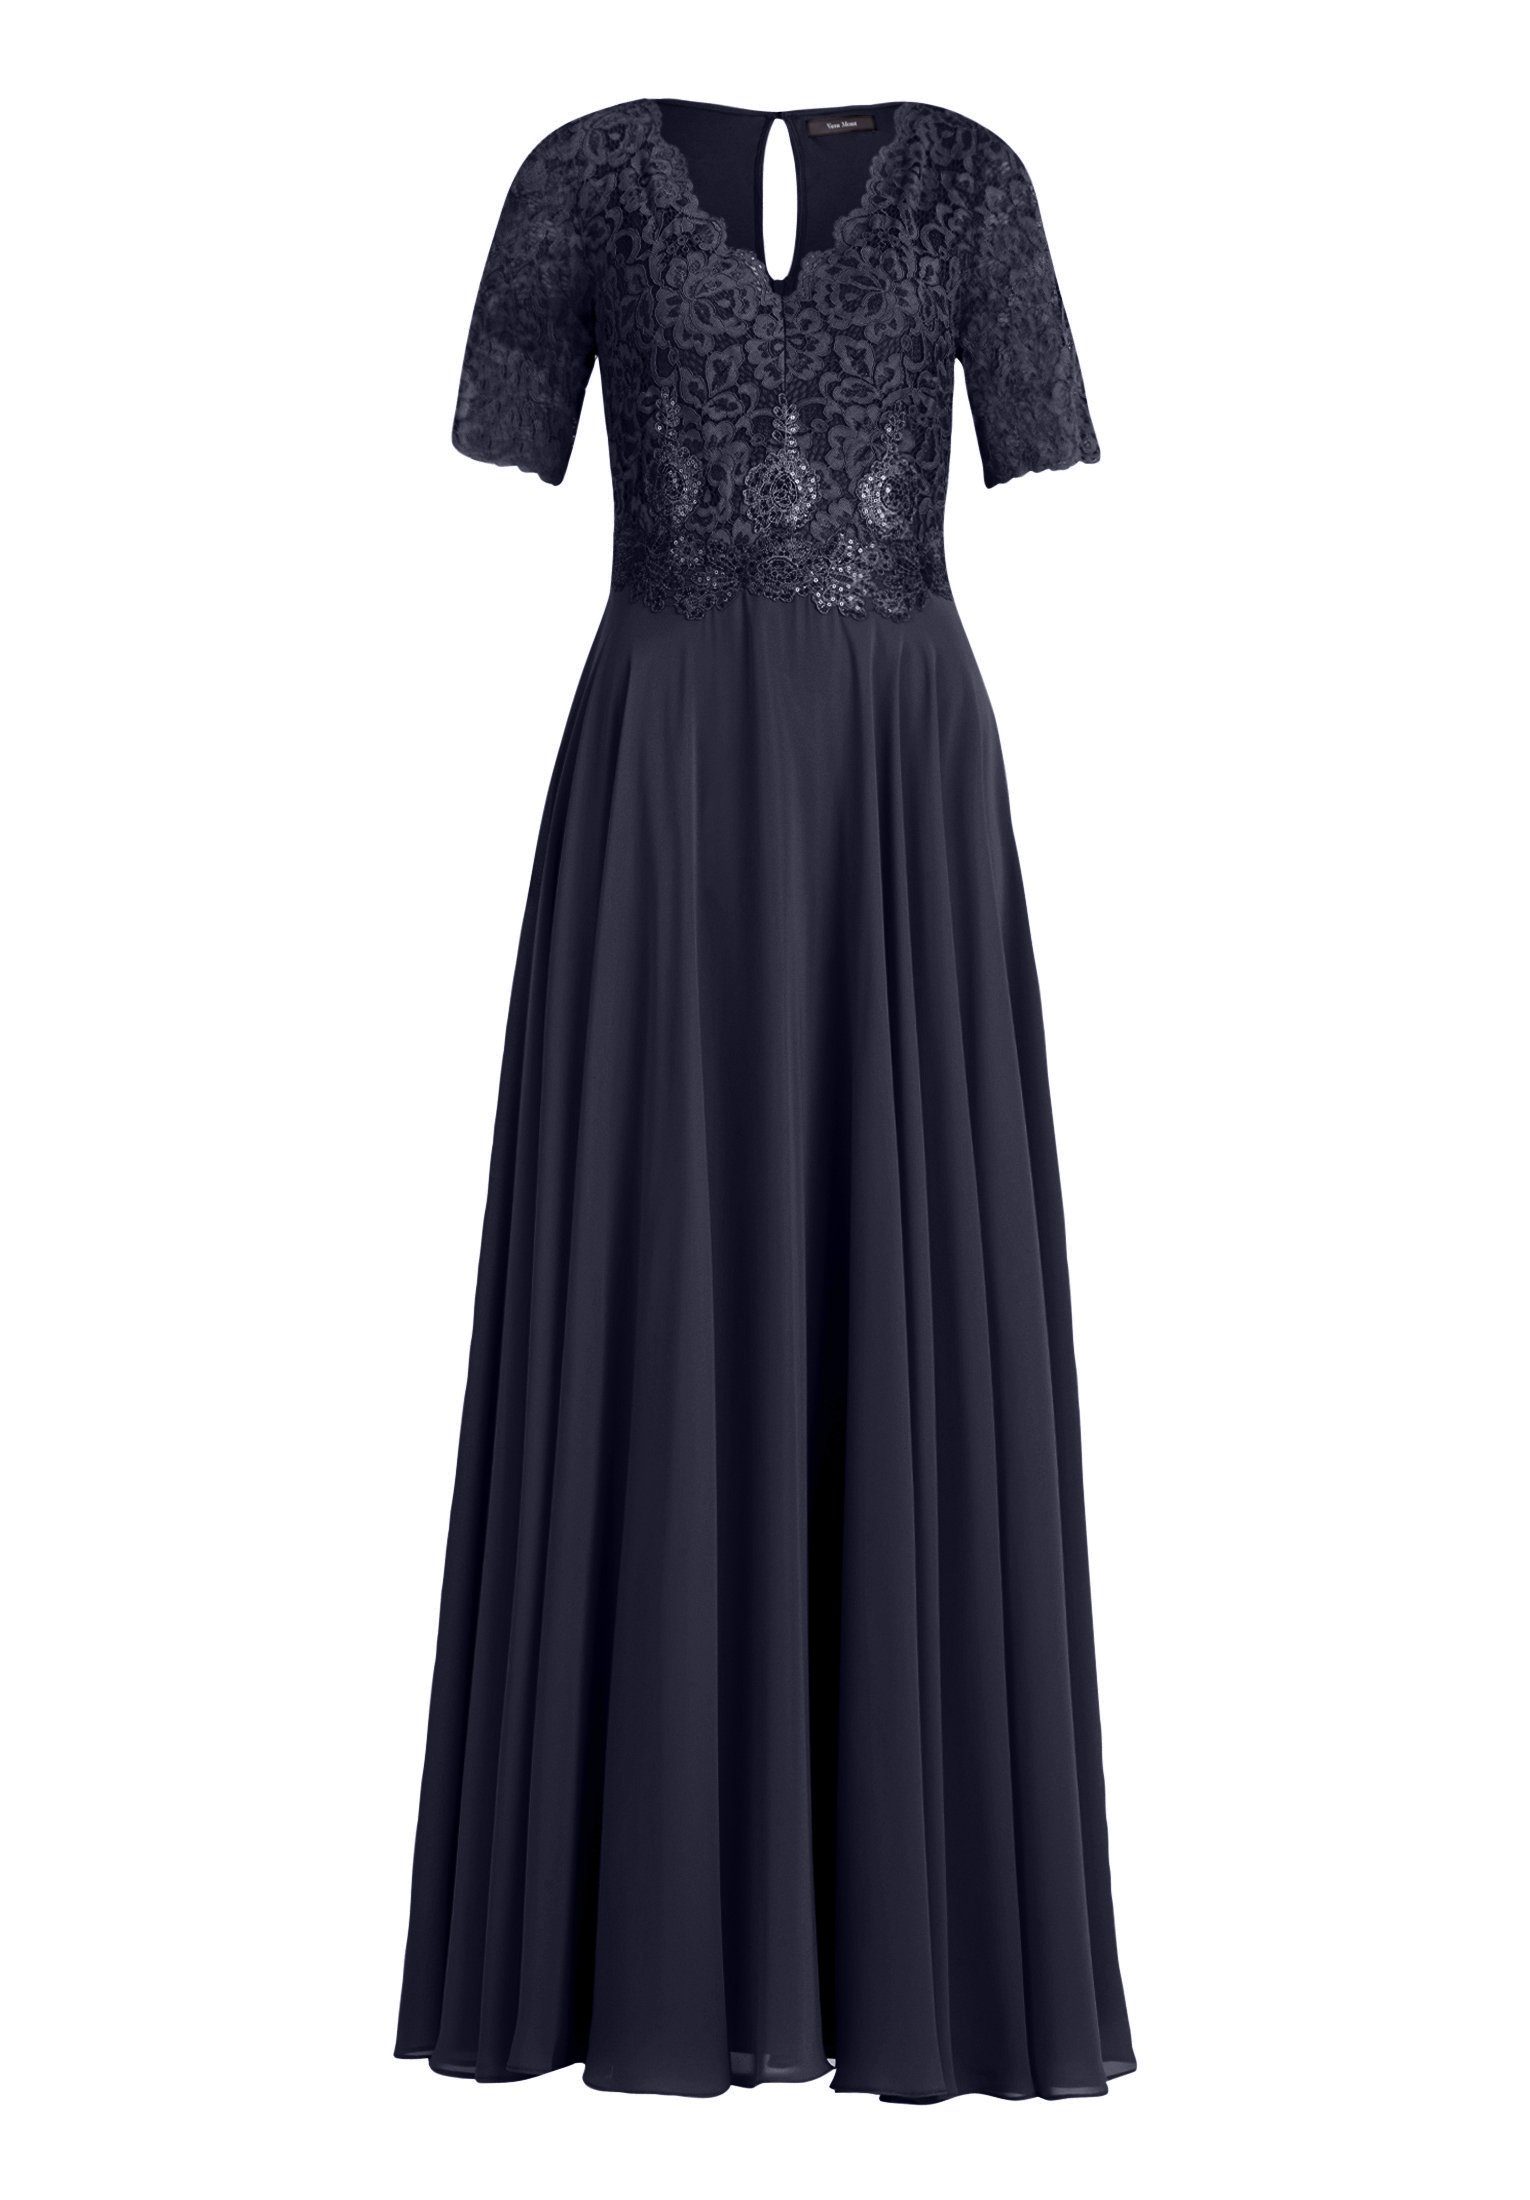 Vera Mont Abendkleid Kleid Lang 3/4 Arm online kaufen | OTTO